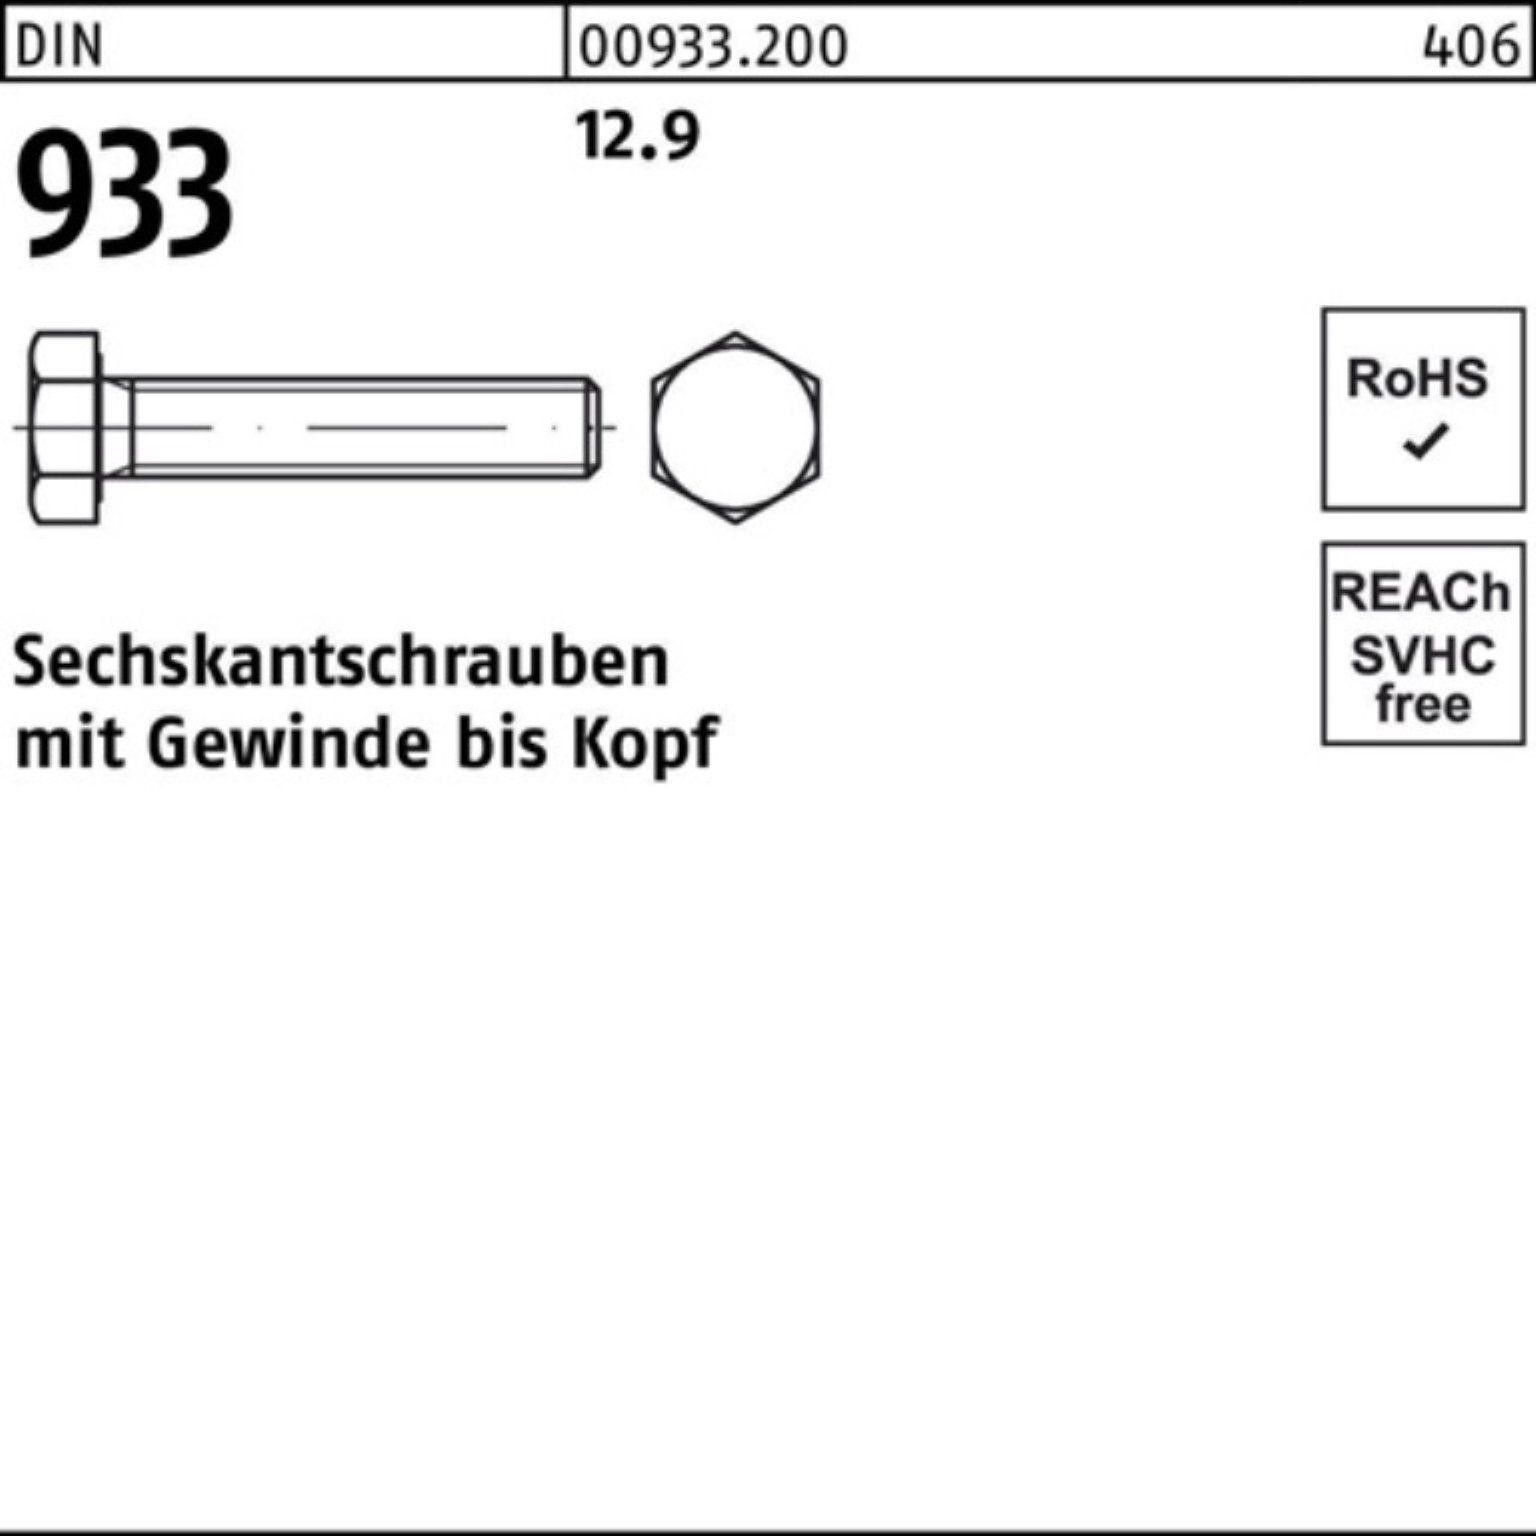 Sechskantschraube VG DIN 12.9 100er Stück 933 Pack 100 DIN 93 M12x Sechskantschraube Reyher 30